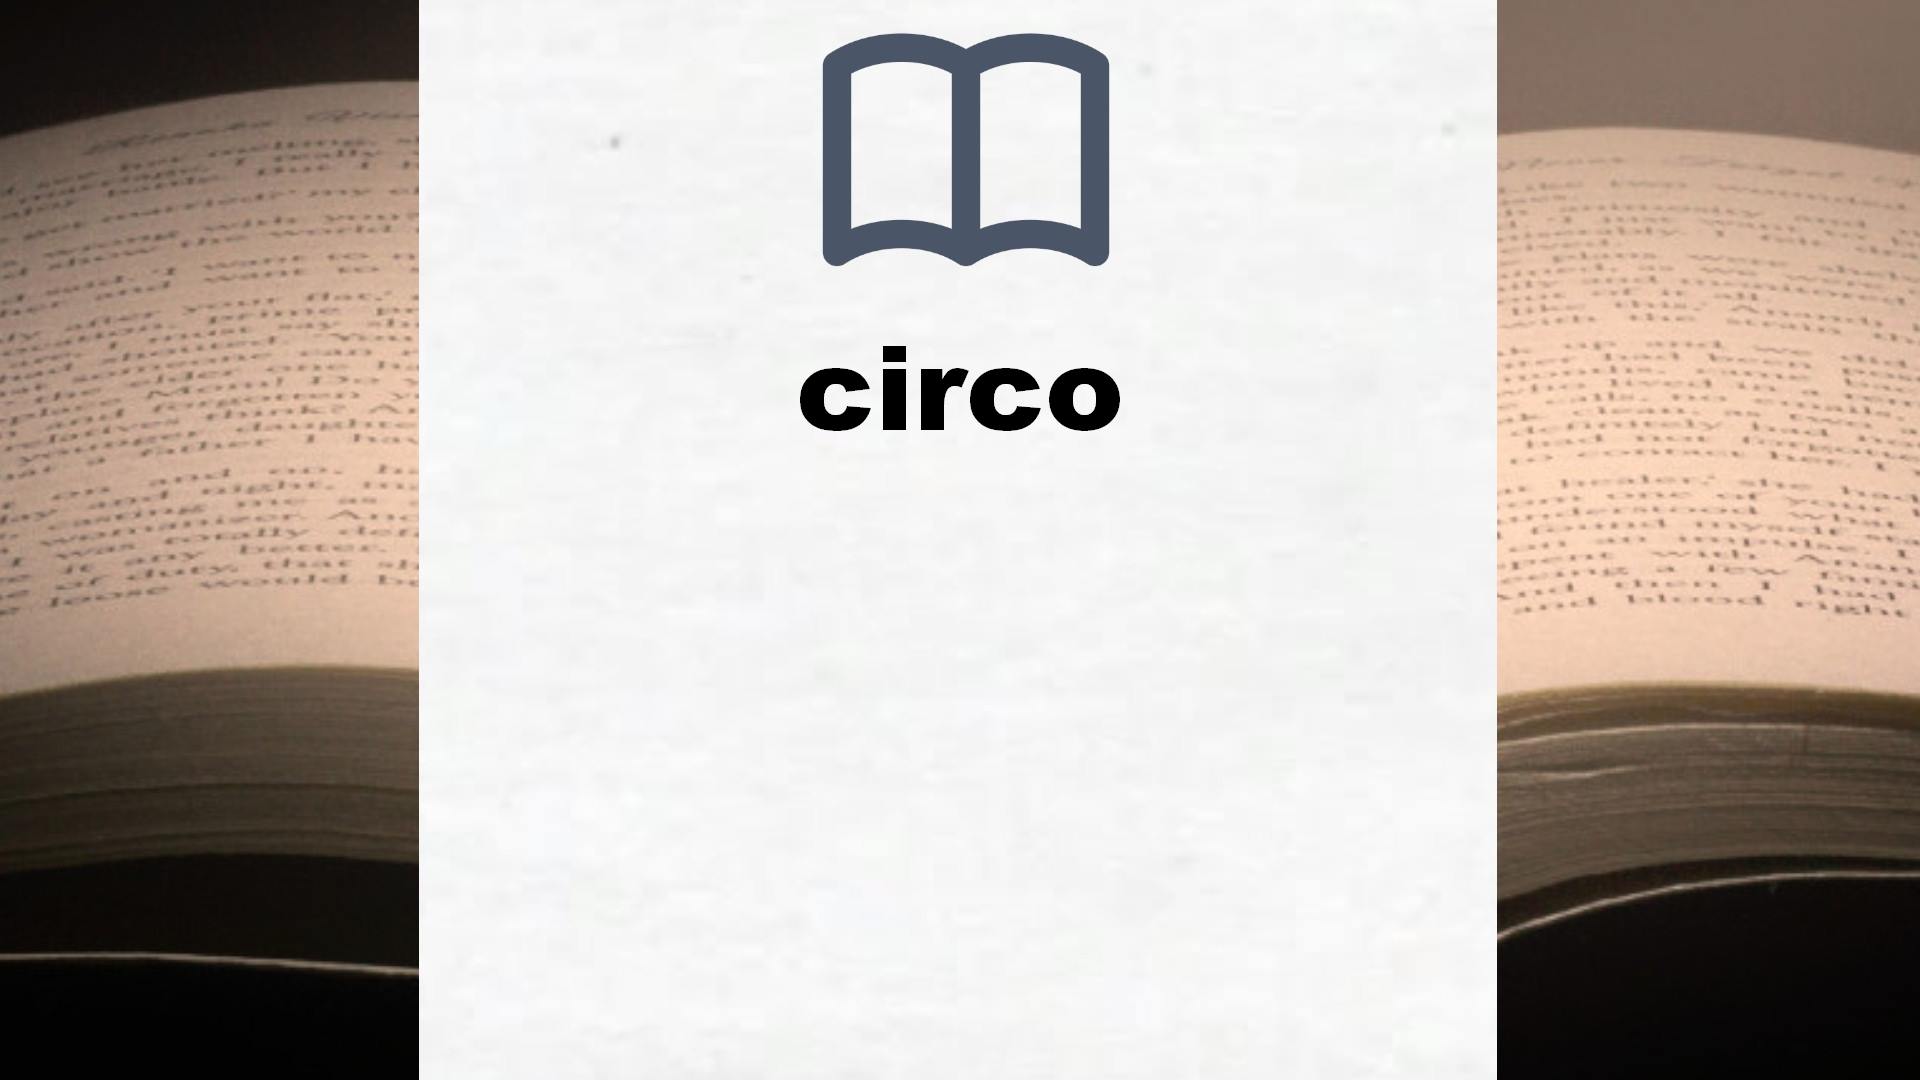 Libros sobre circo